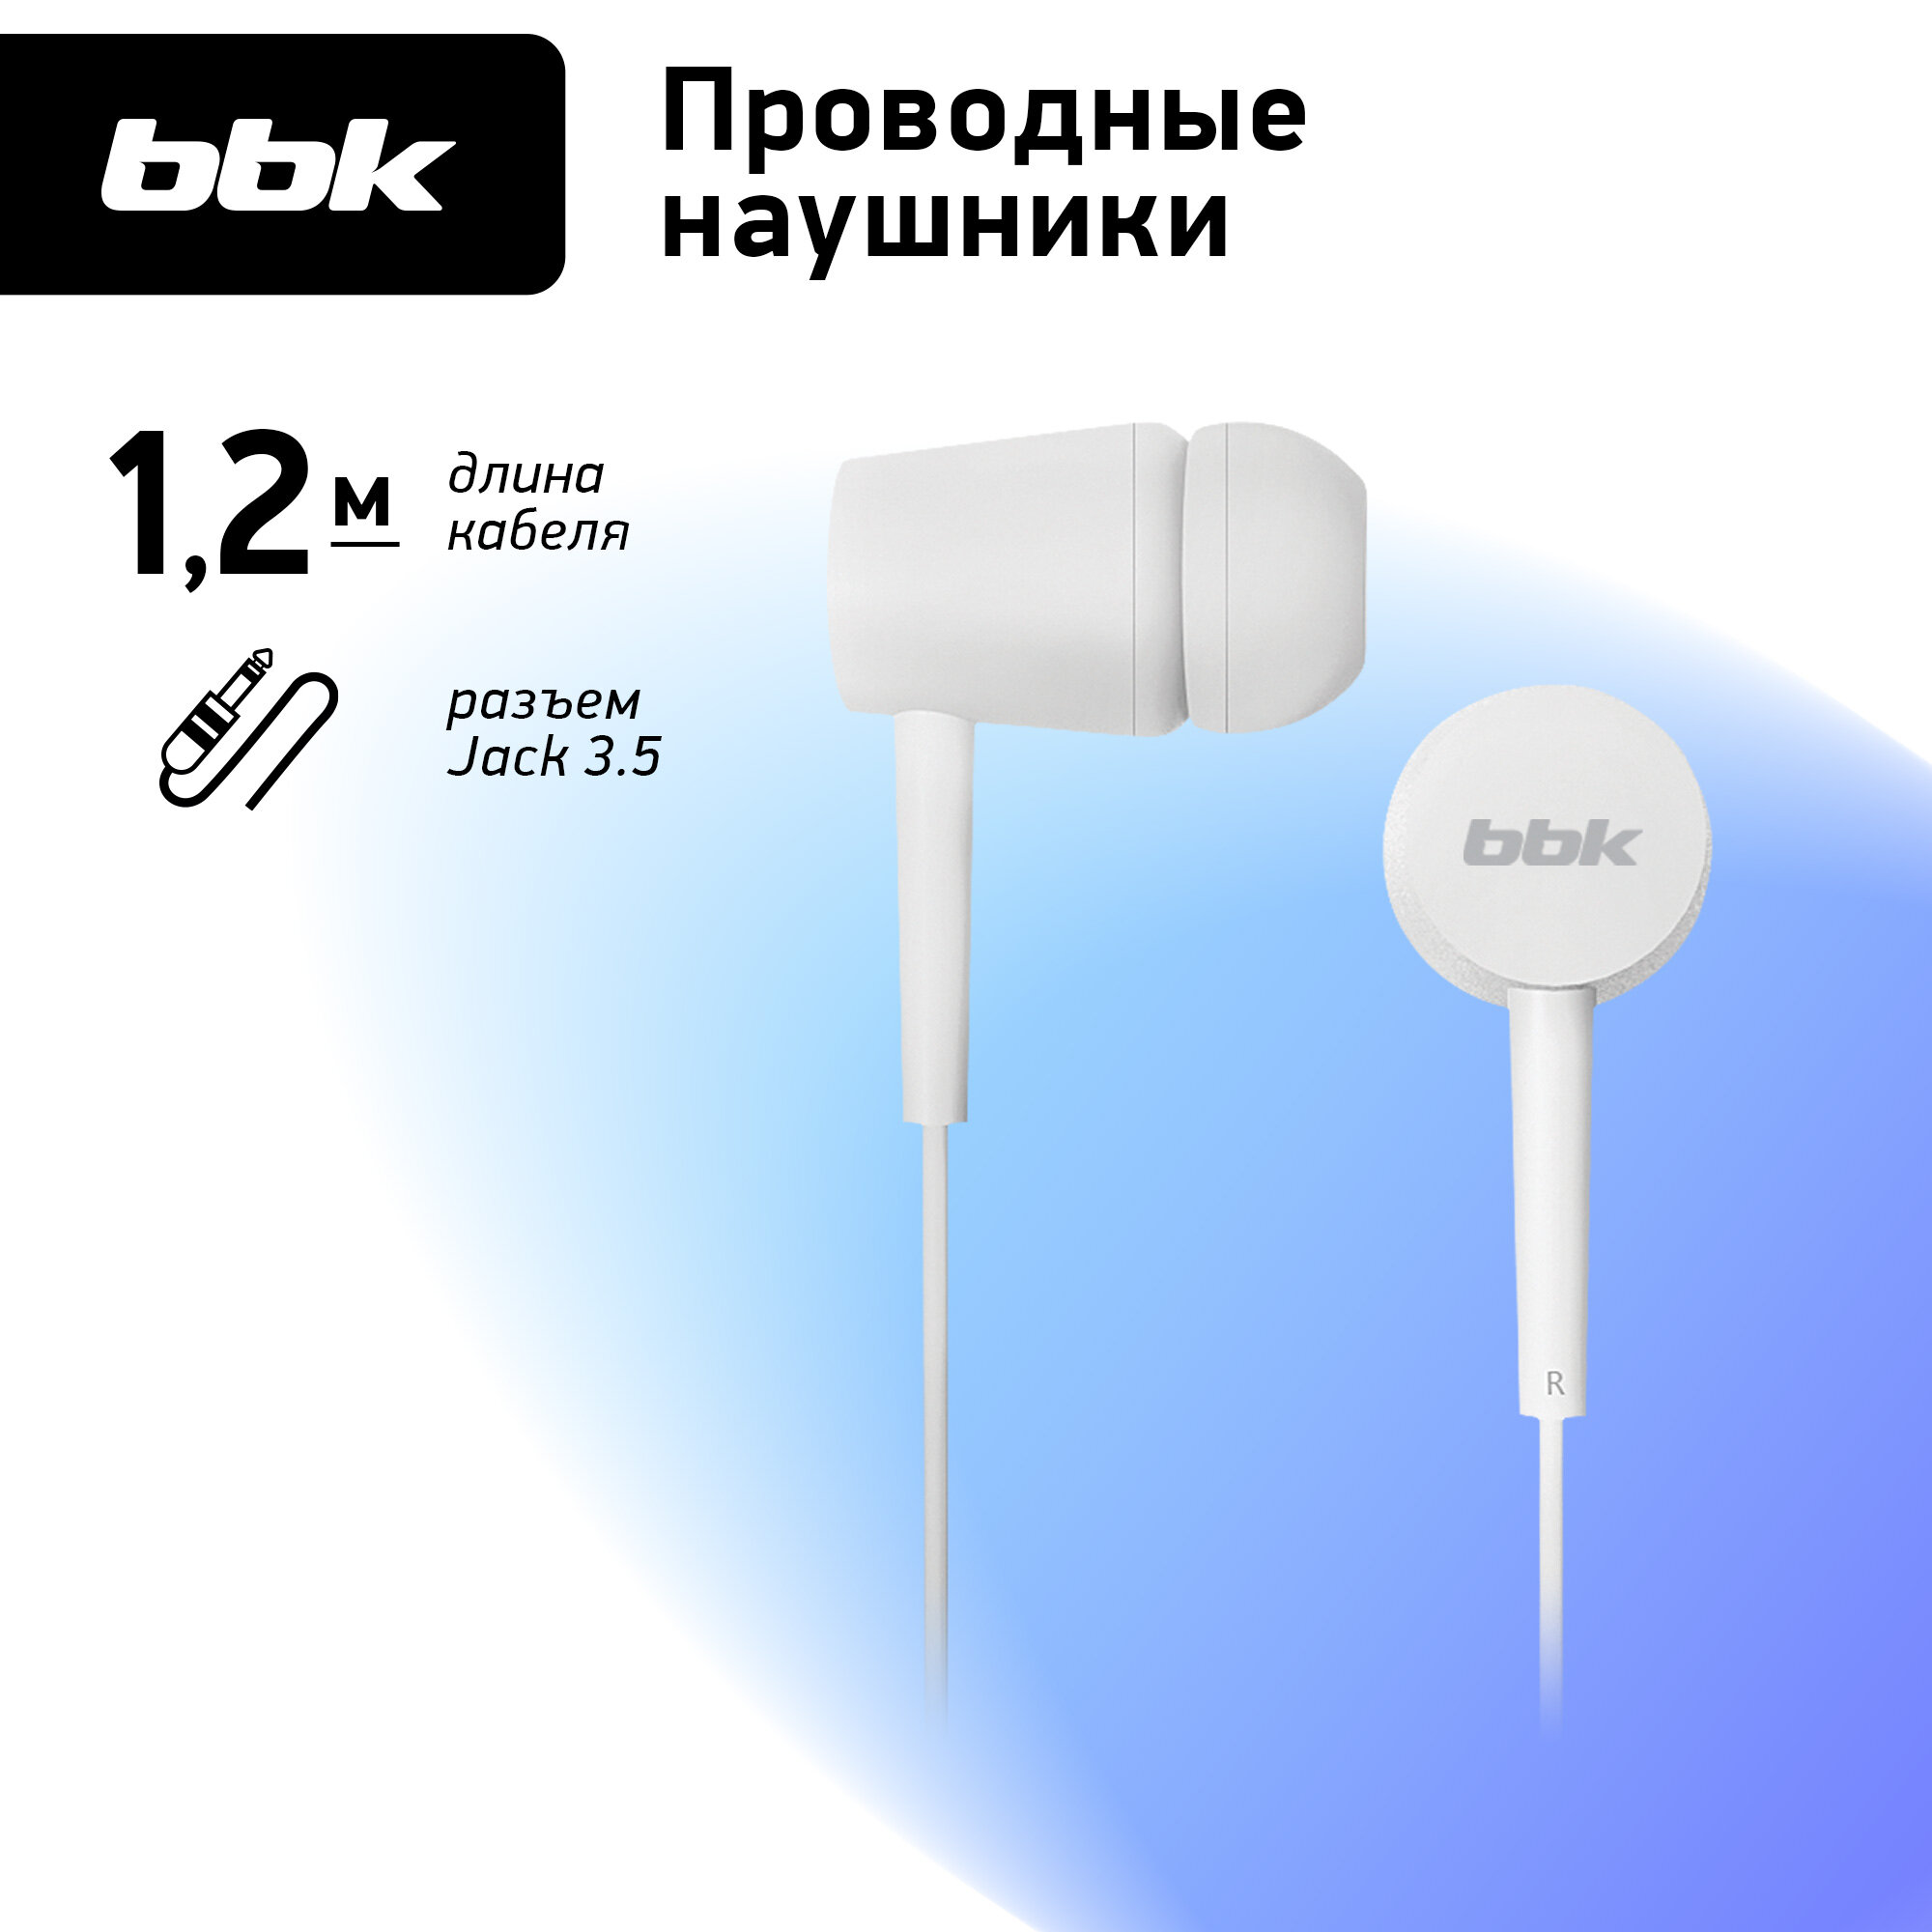 Проводные наушники BBK EP-1002S